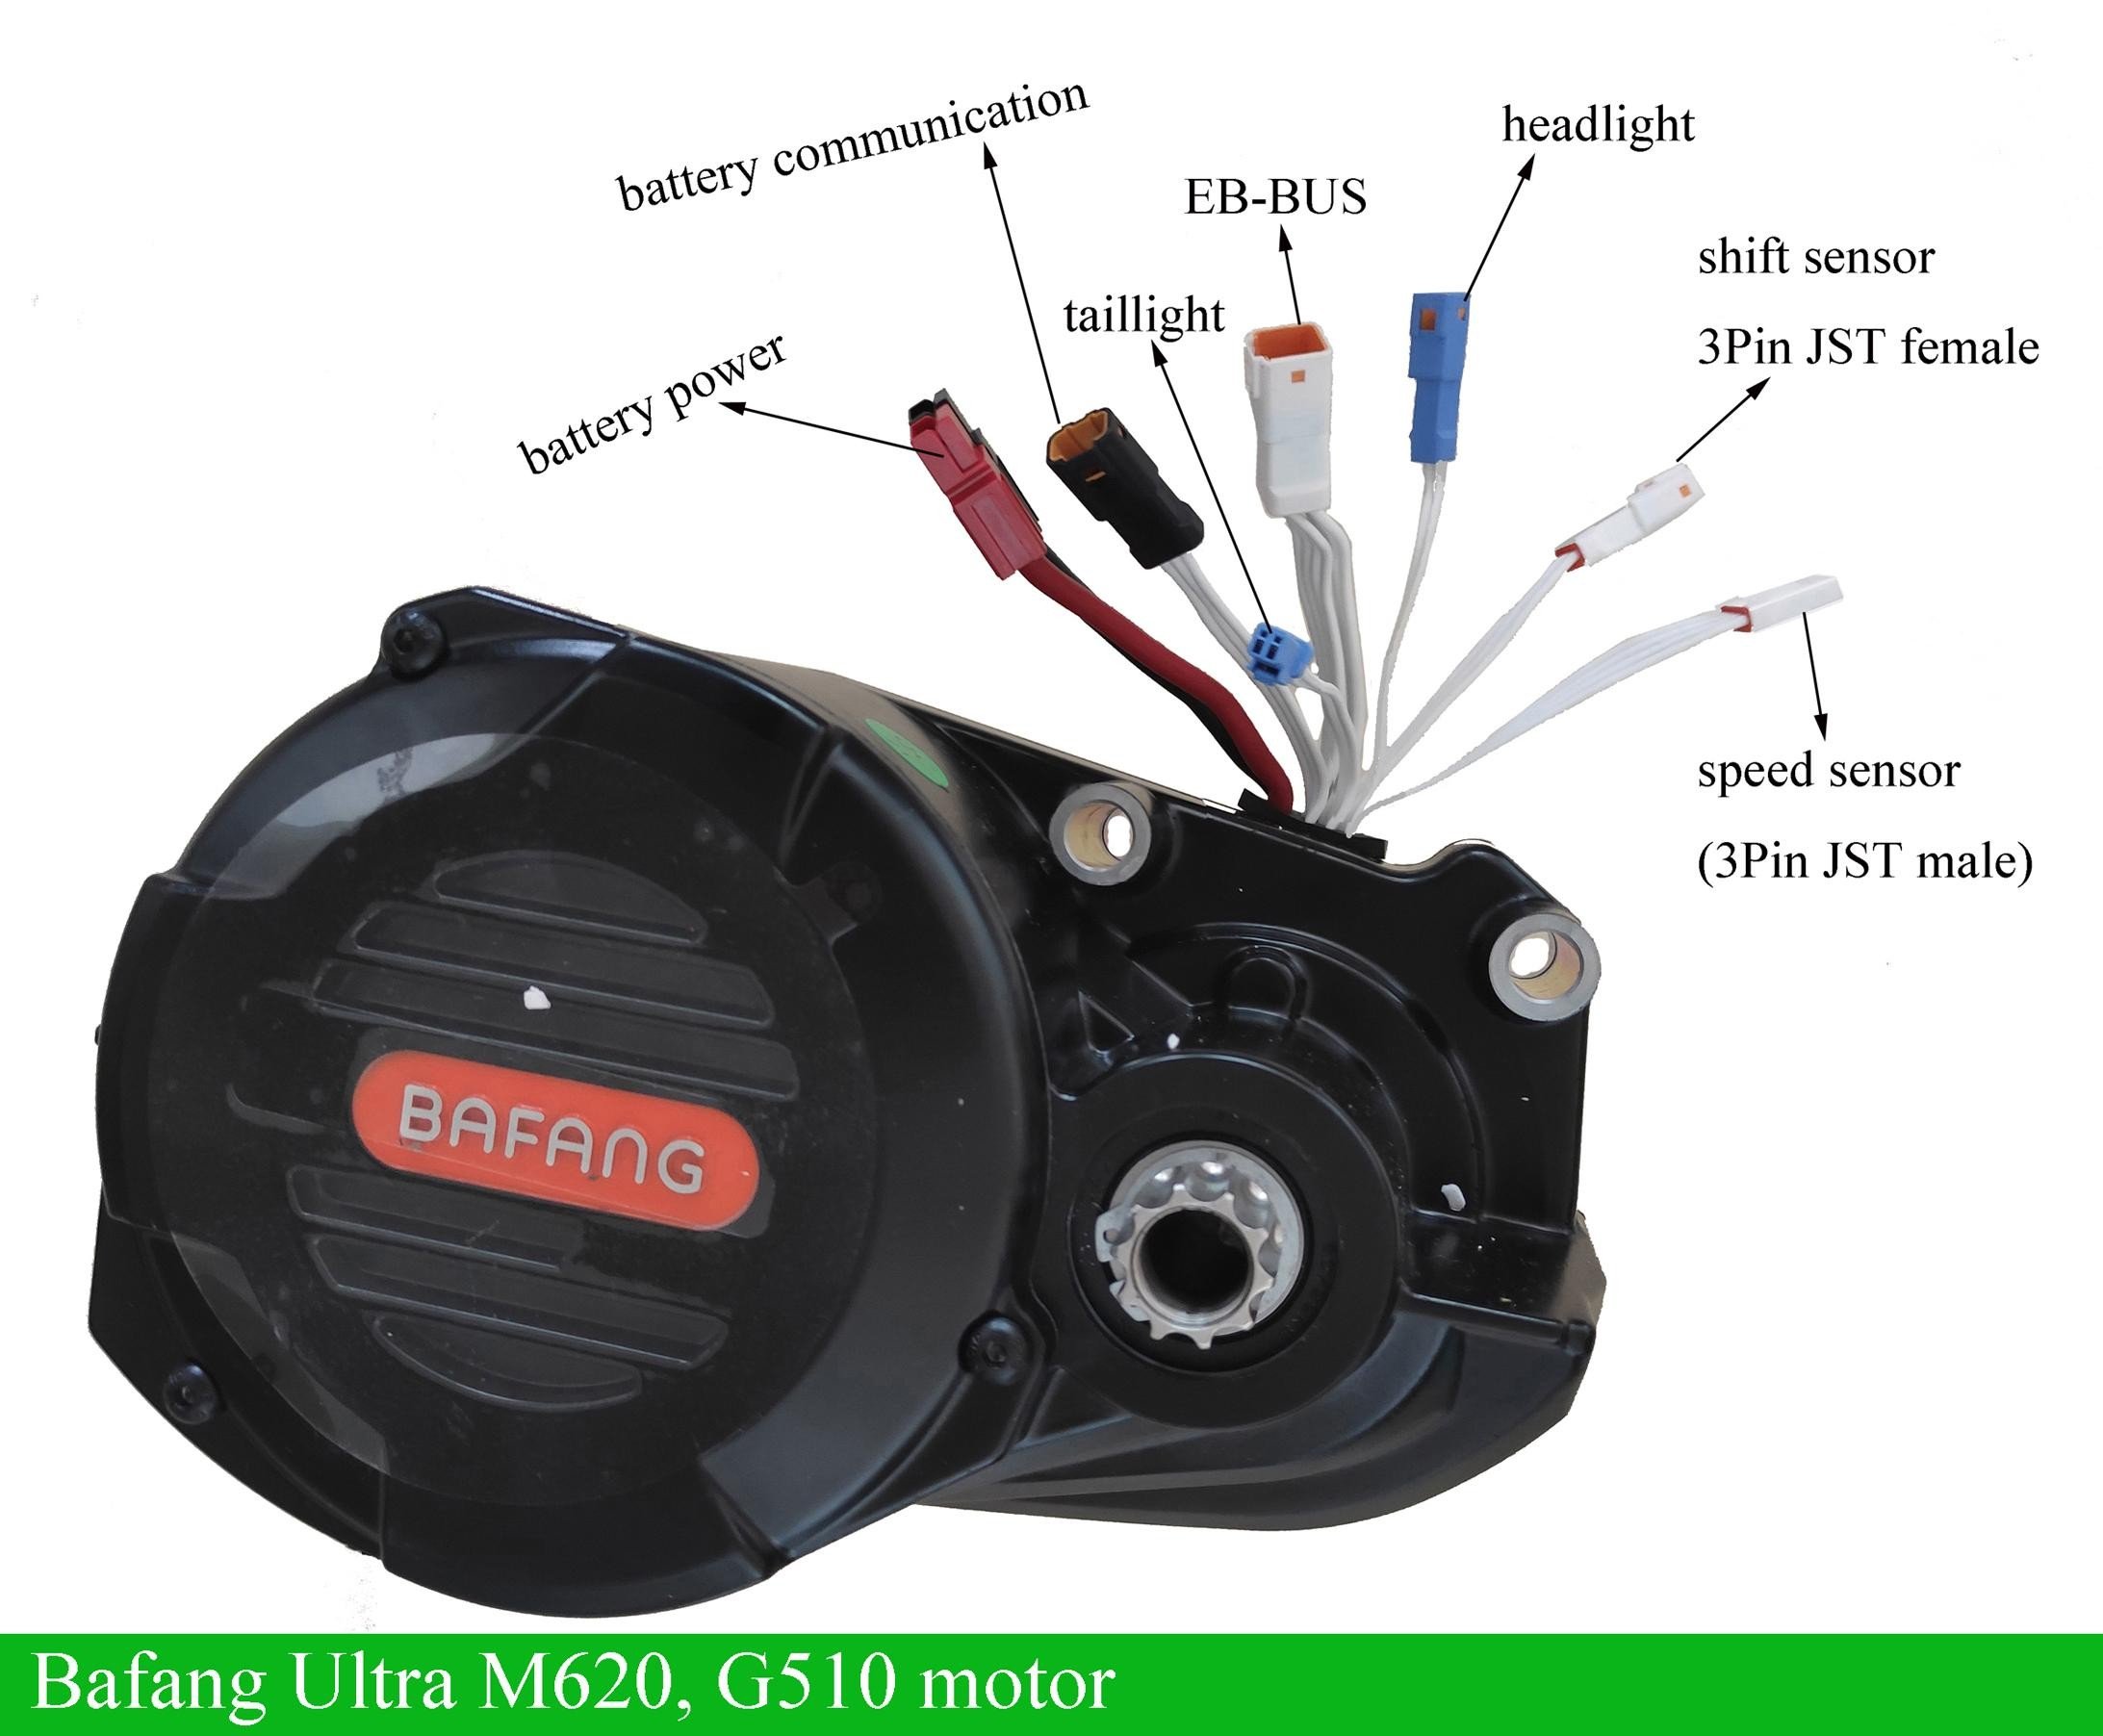 bafang-ultra-g510-m620-barebone-motor-1000w-48v-52v.jpg